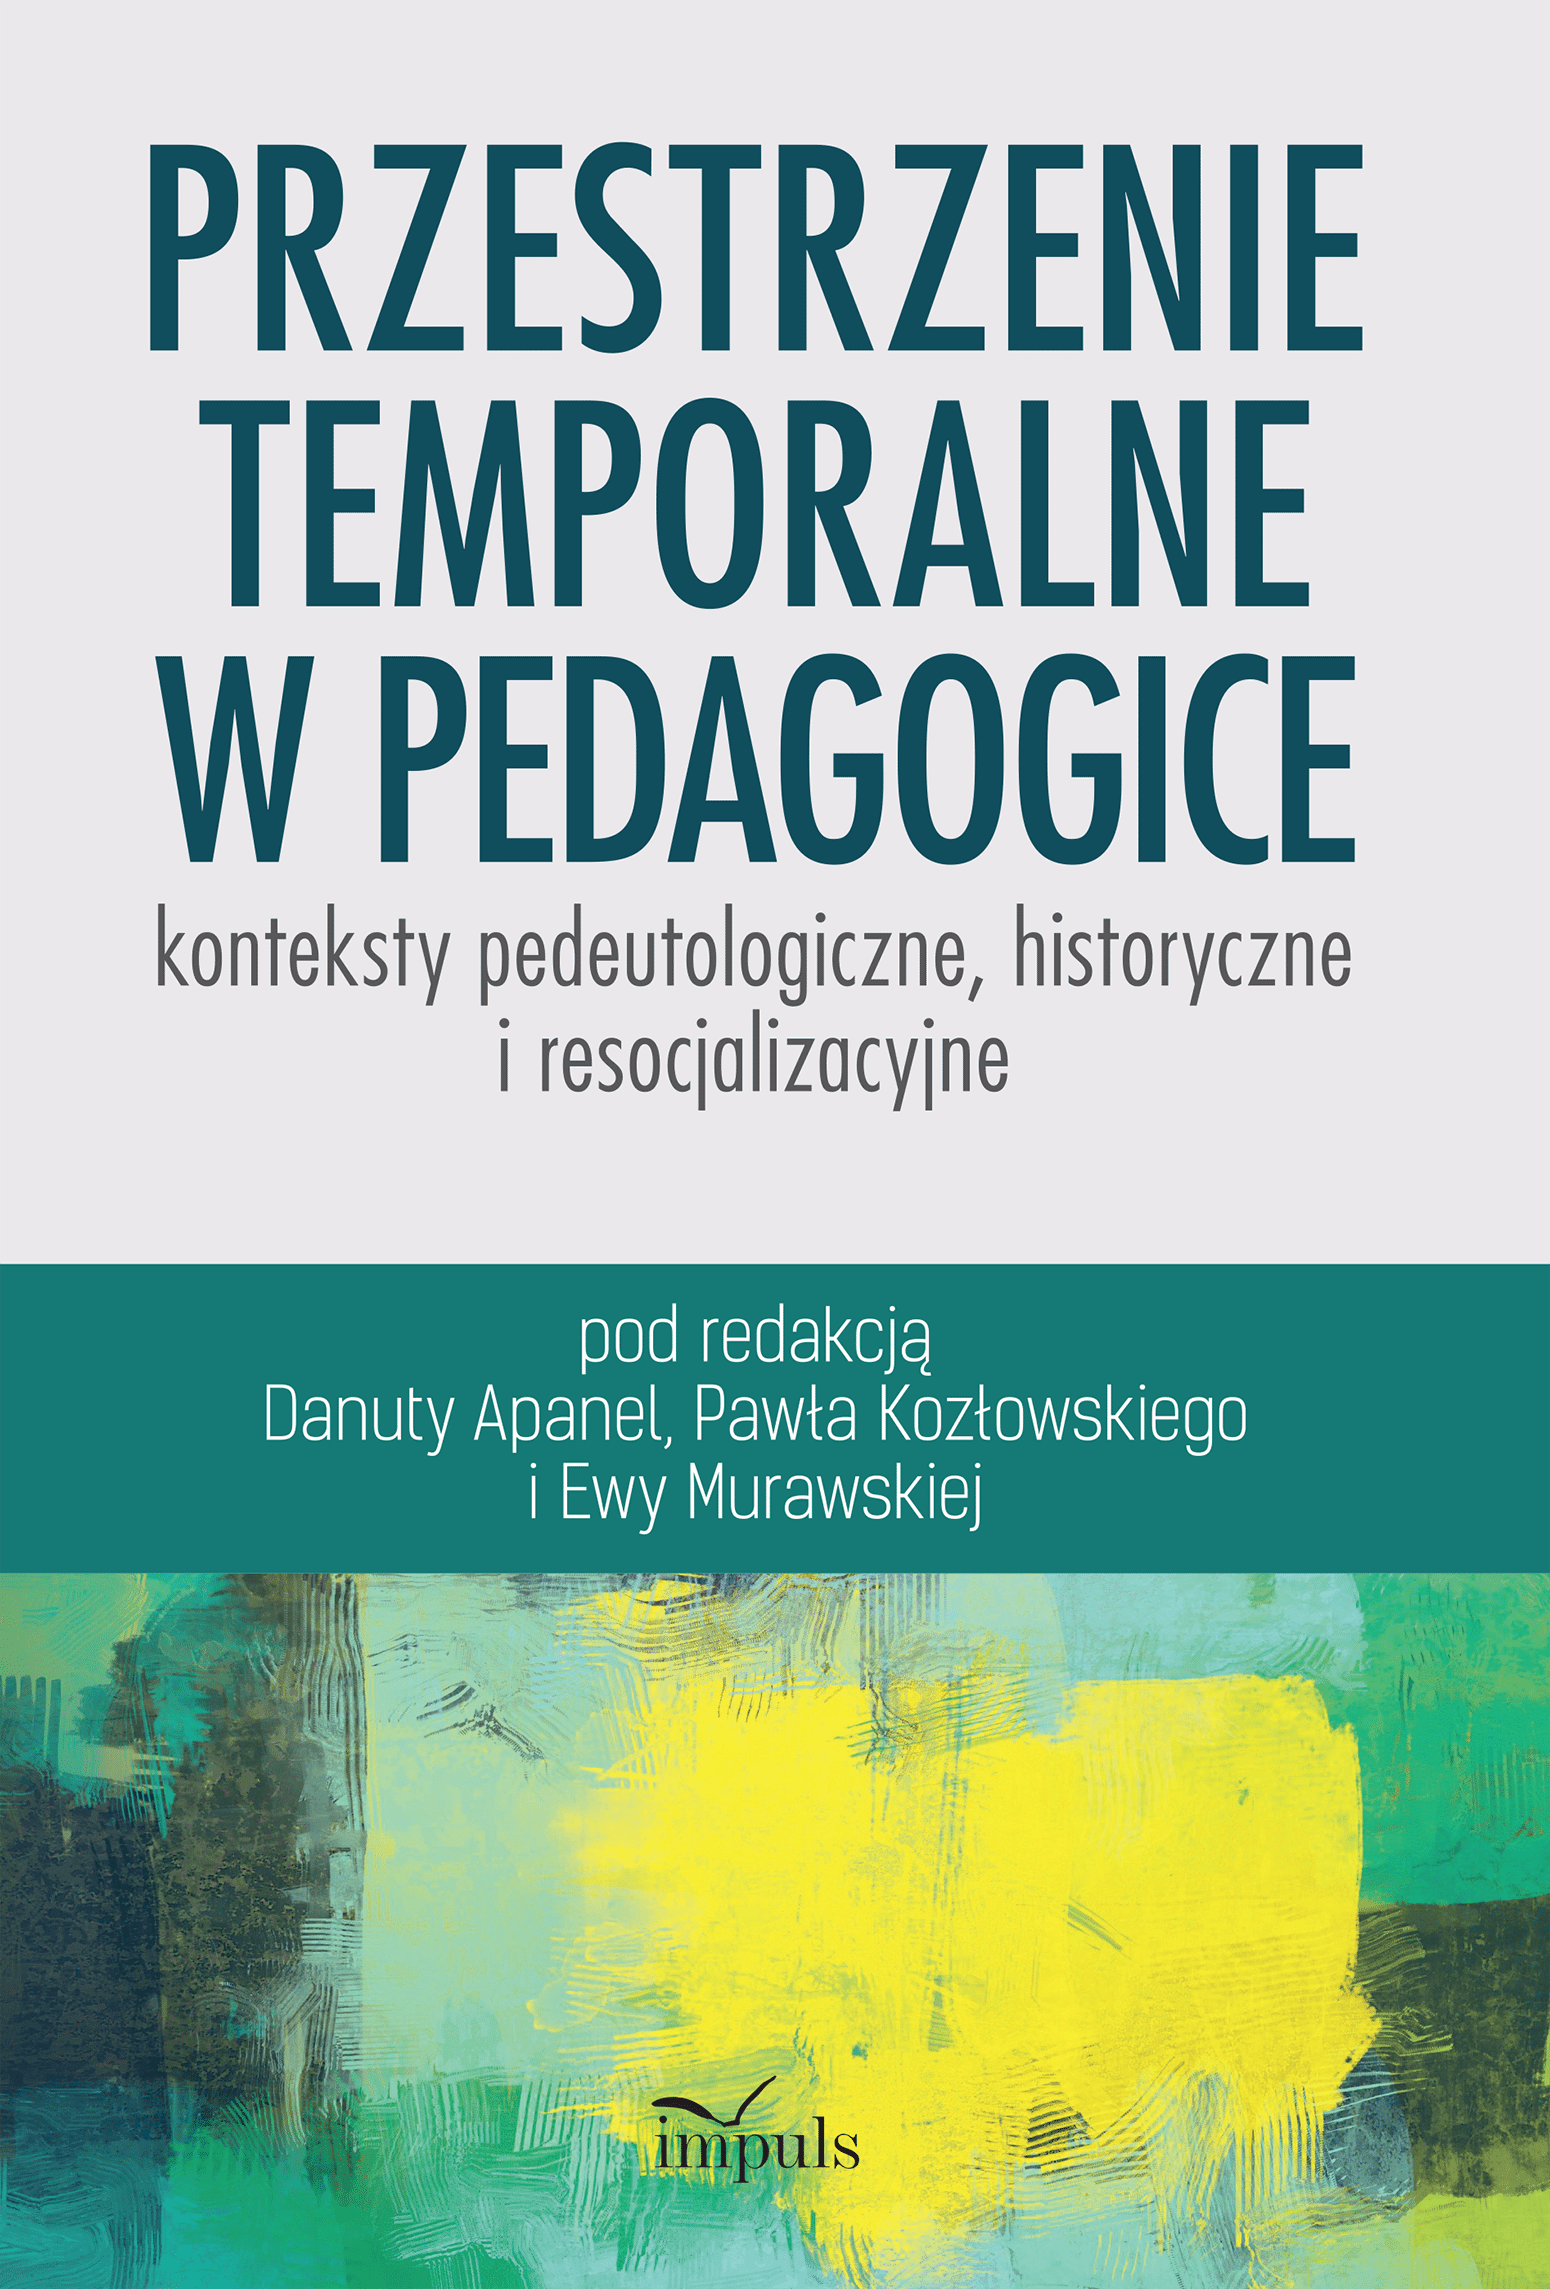 Przestrzenie temporalne w pedagogice - konteksty pedeutologiczne, historyczne i resocjalizacyjne